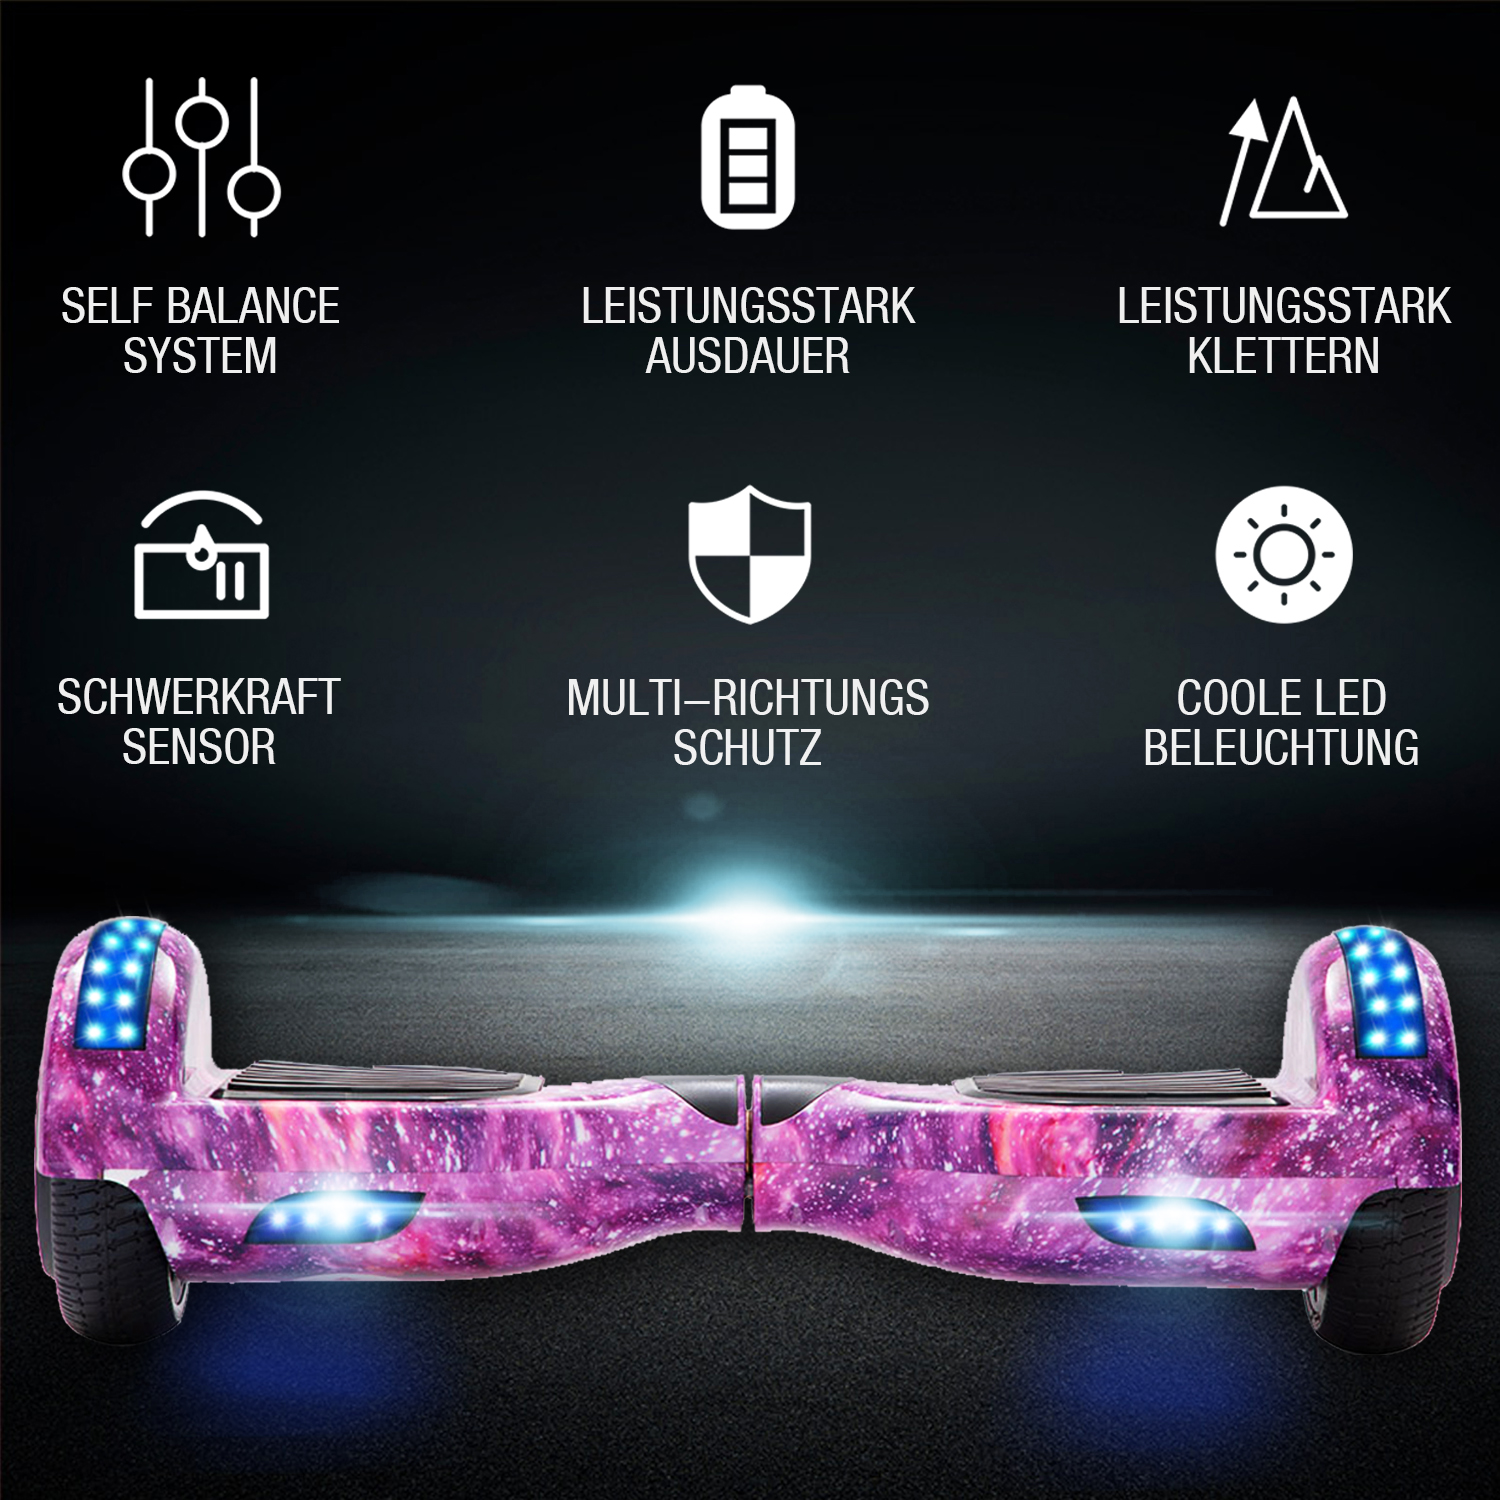 6,5 Zoll Galaxie Lila Hoverboard für Kinder Bluetooth Lautsprecher Musik LED Lichter Deutschland